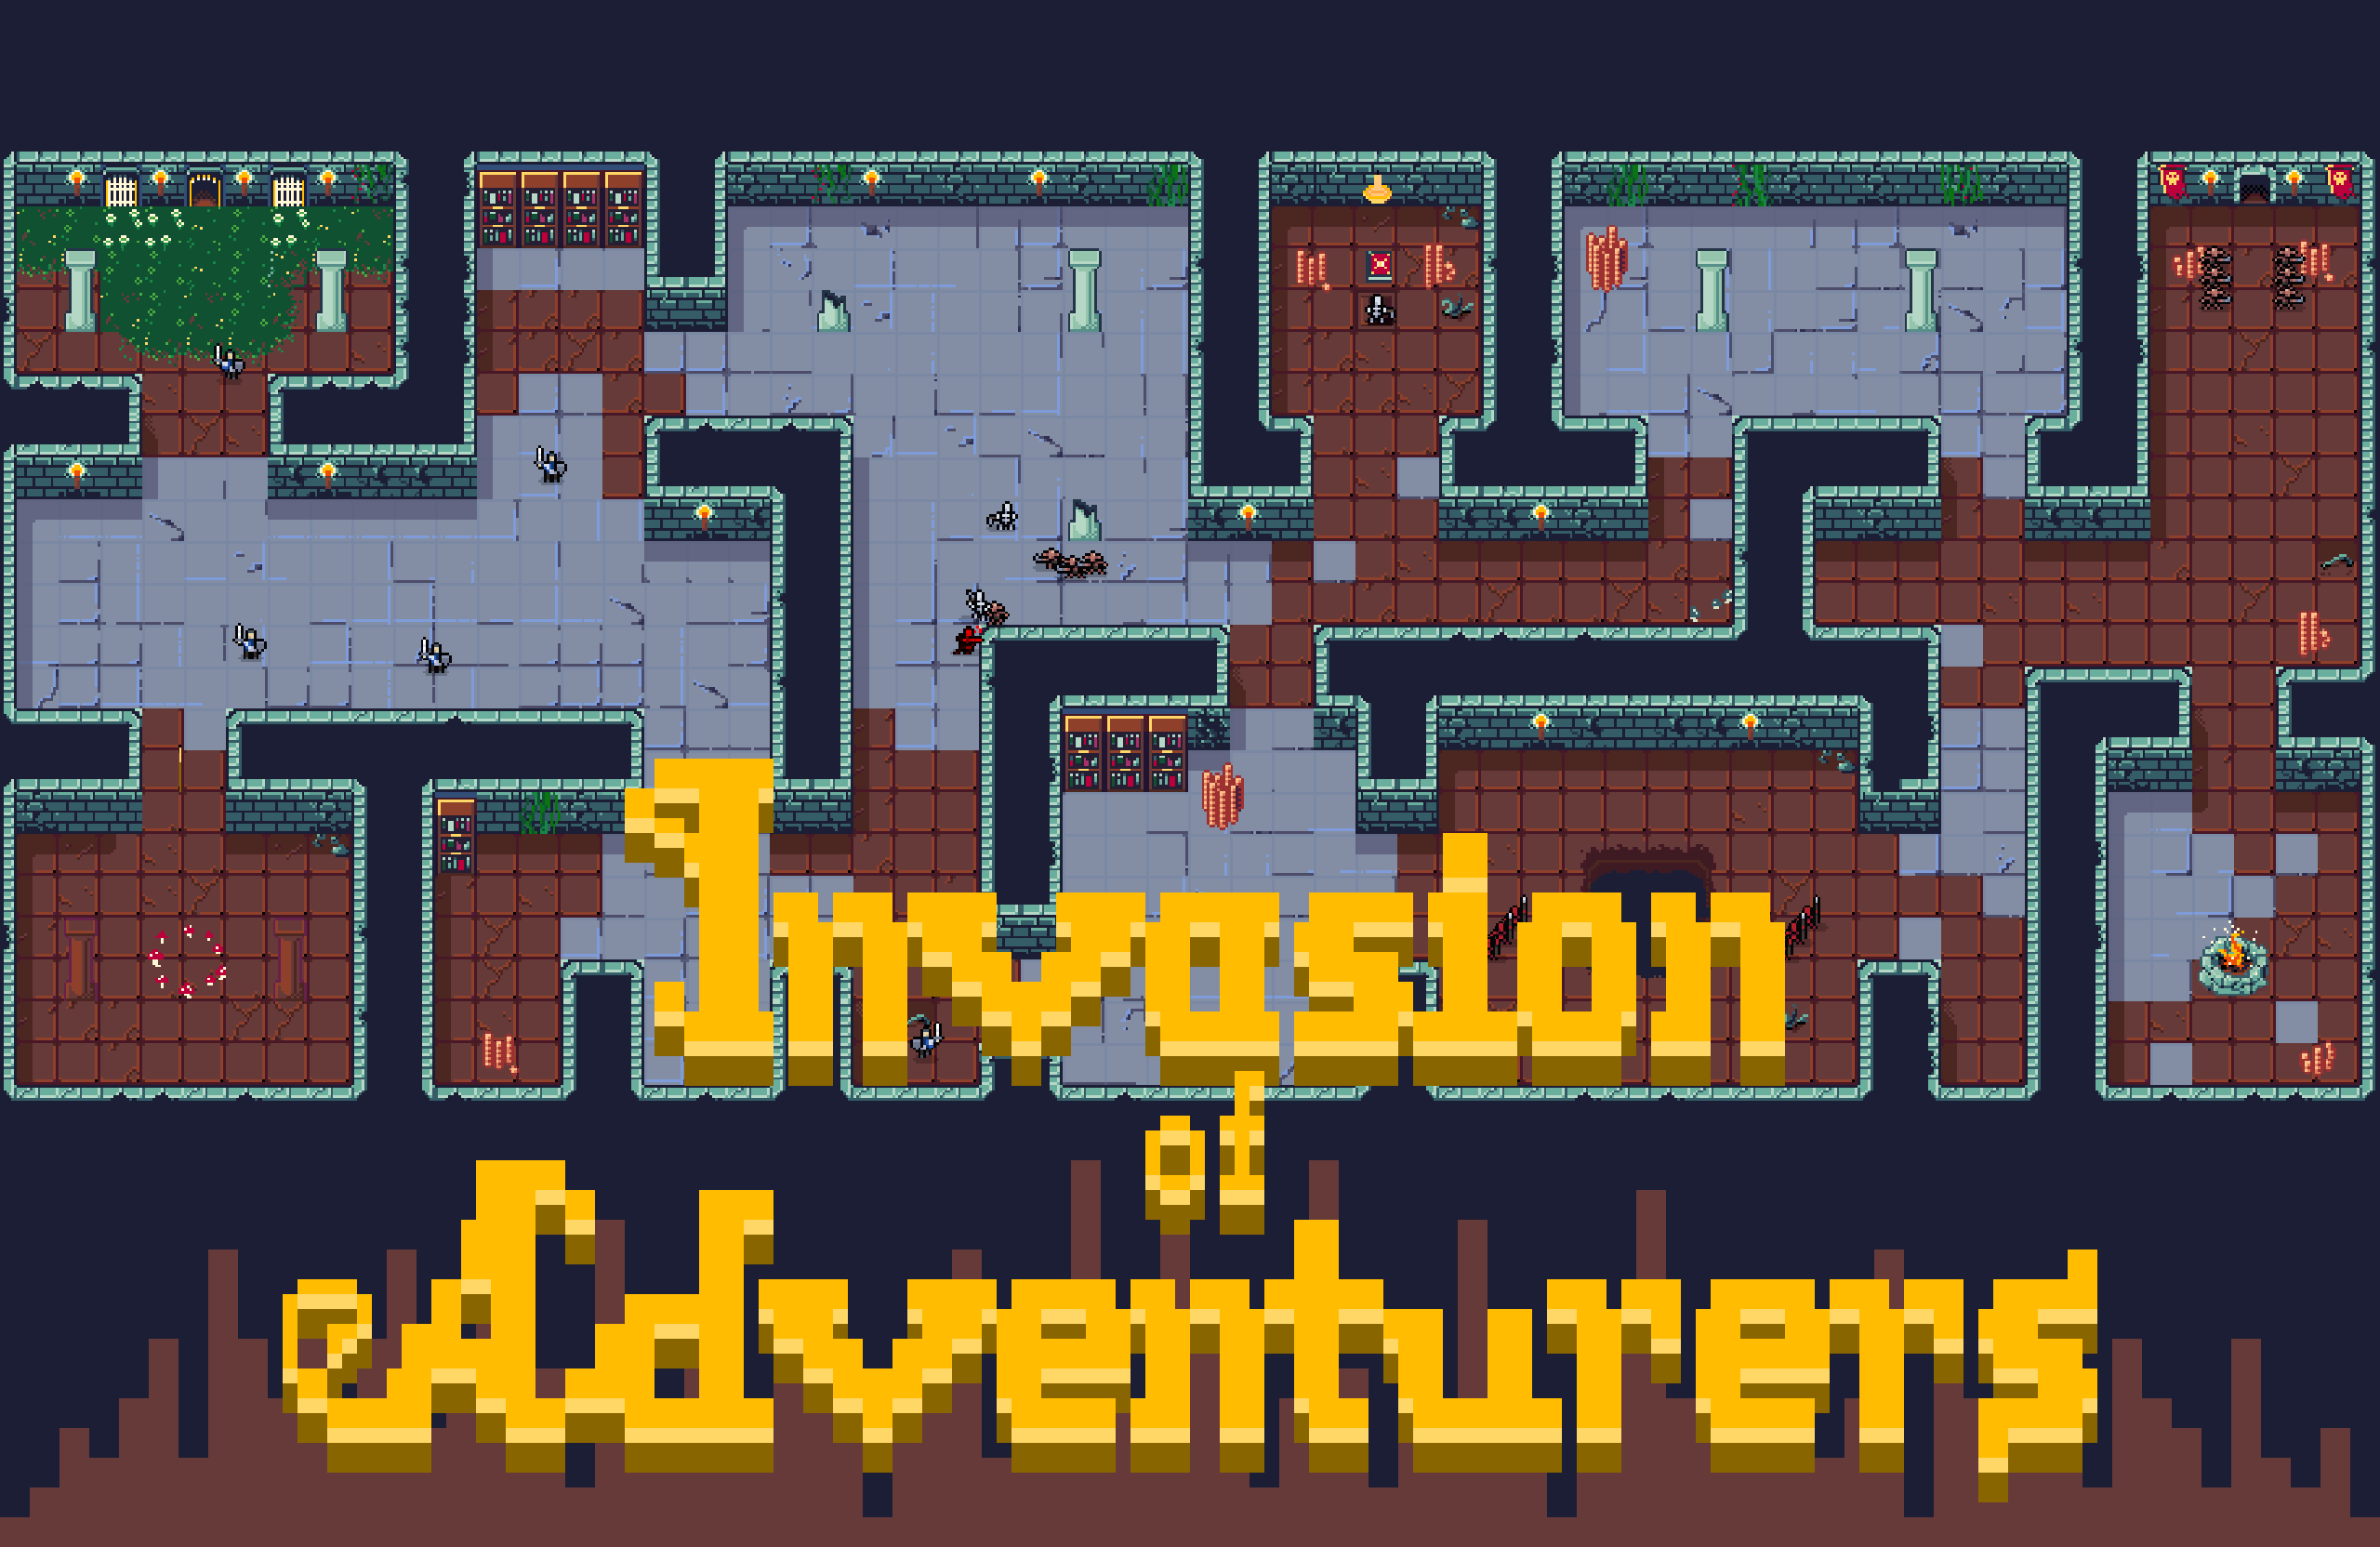 Invasion of Adventurers